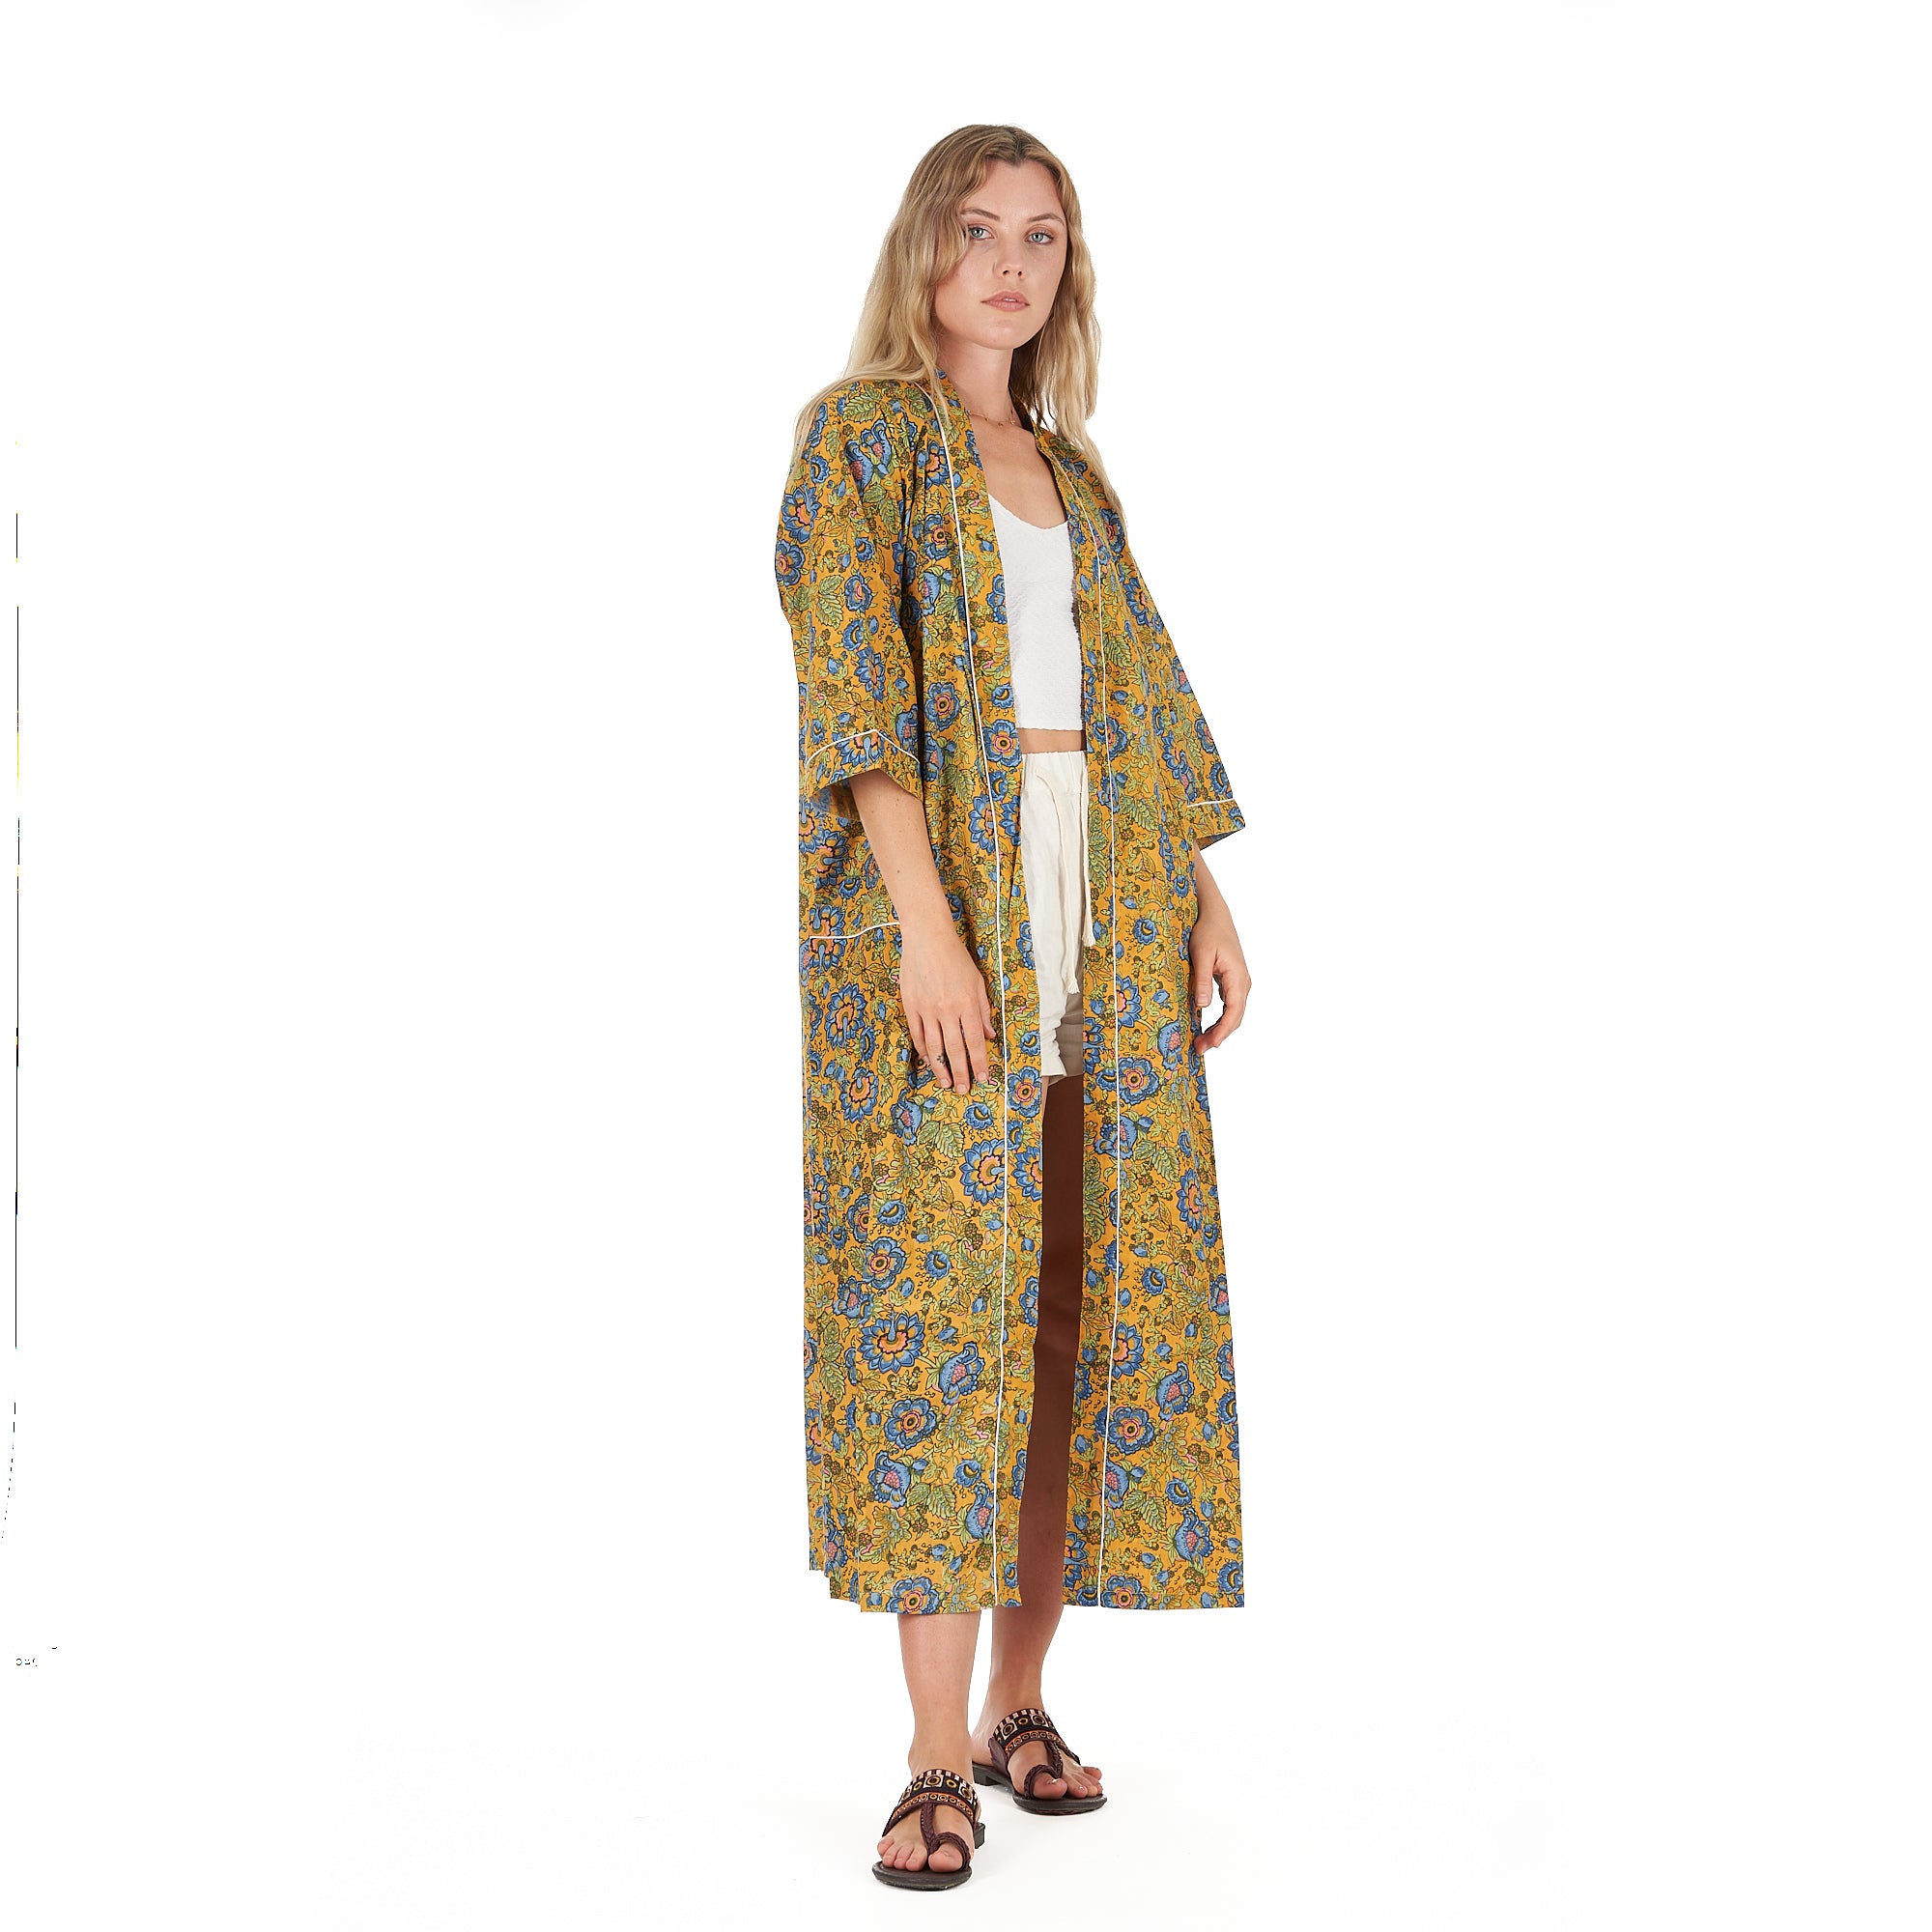 'Gardenia Goddess' 100% Cotton Kimono Robe